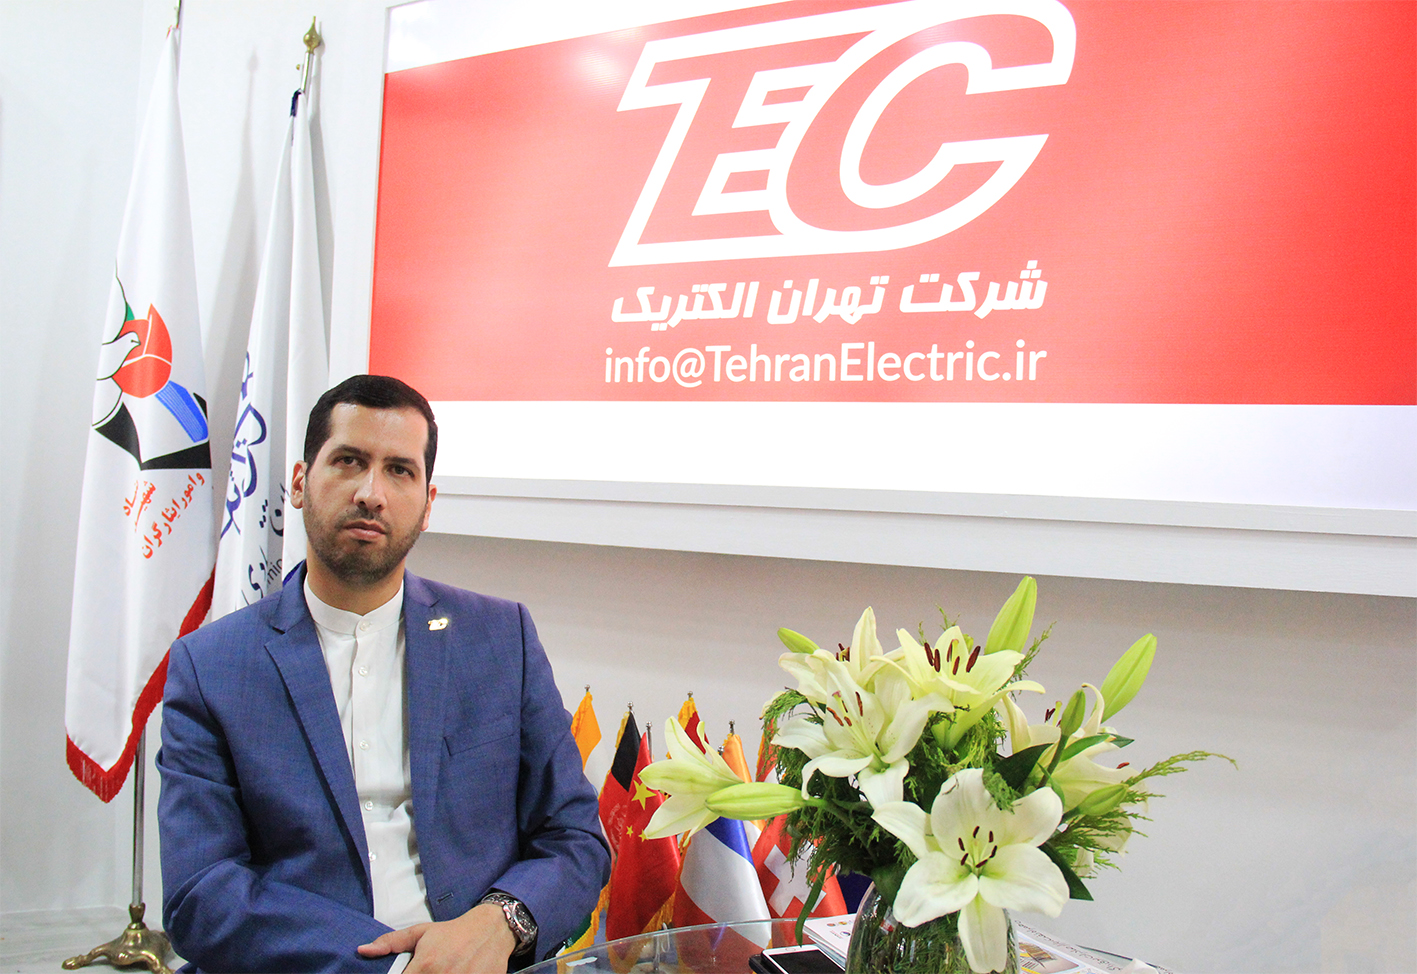 حضور فعال و پویا شرکت تهران الکتریک در بیست و دومین نمایشگاه تجهیرات پزشکی ایران هلث